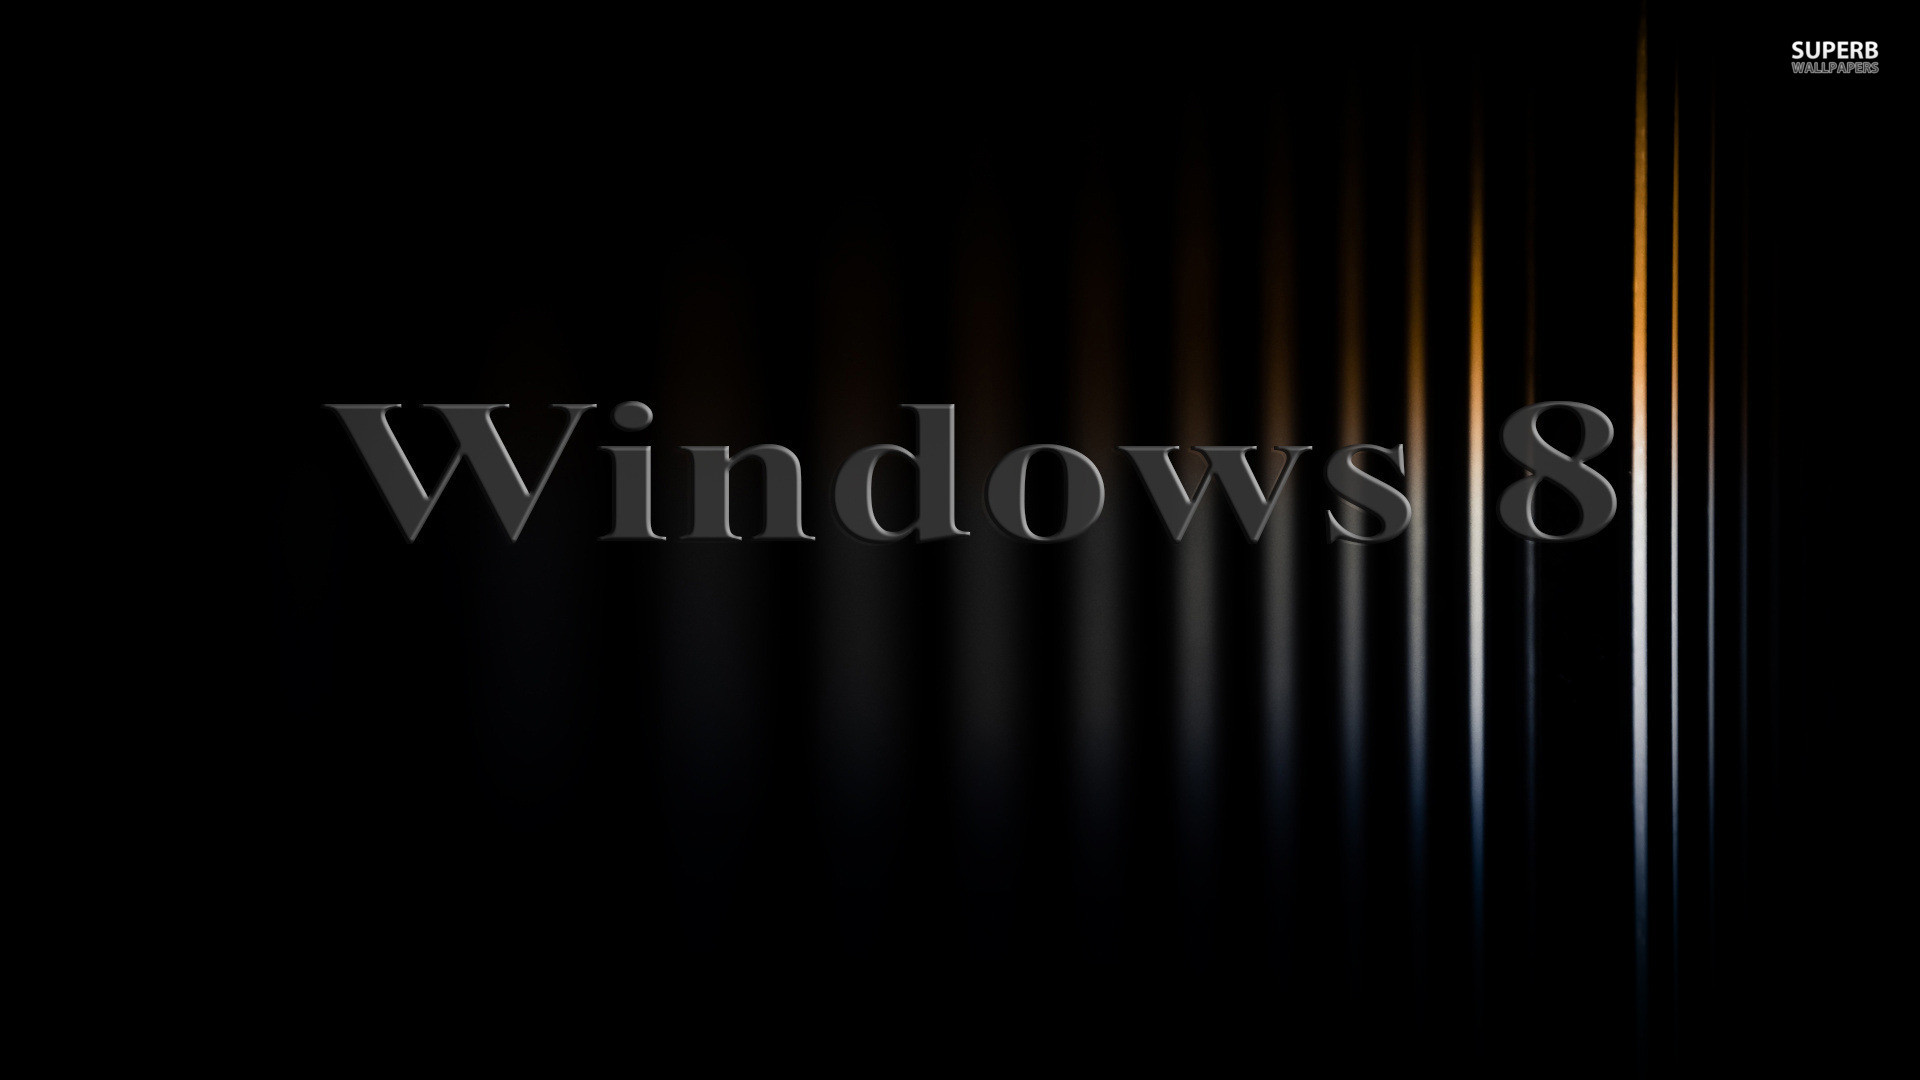 1920x1080 Windows 8.1 HD Wallpapers Gallery (85 Plus) - juegosrev.com - juegosrev.com